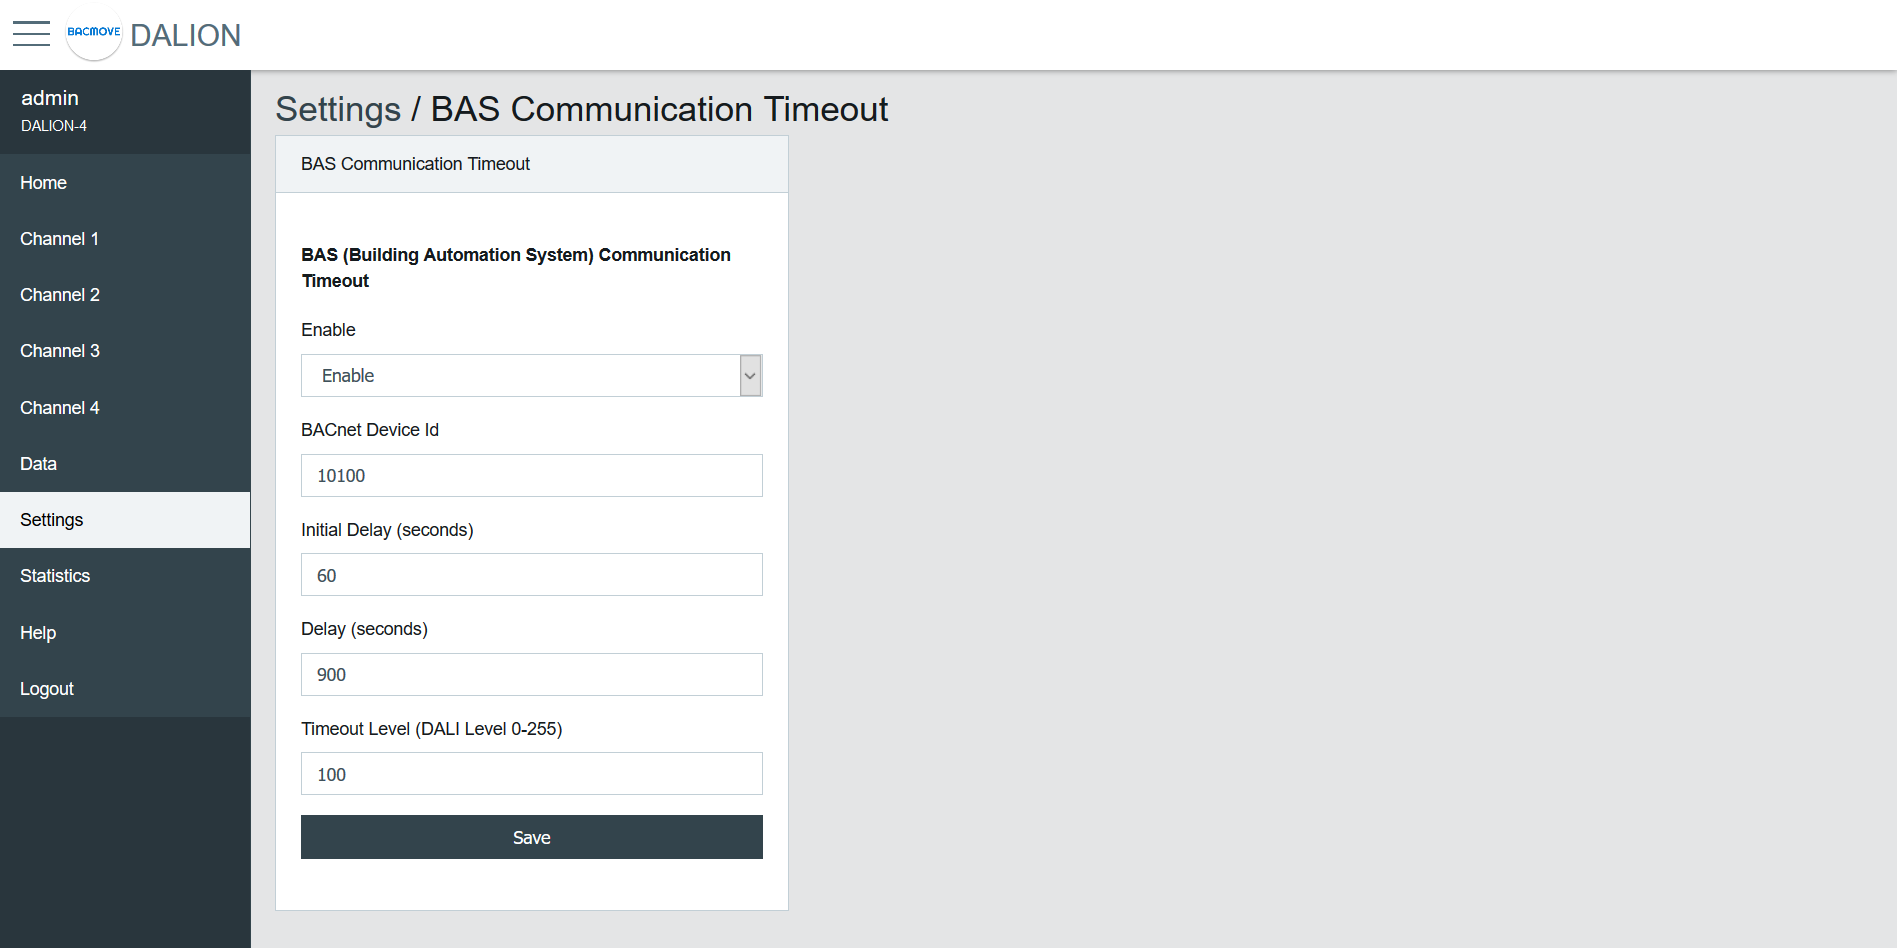 BAS Communication Timeout